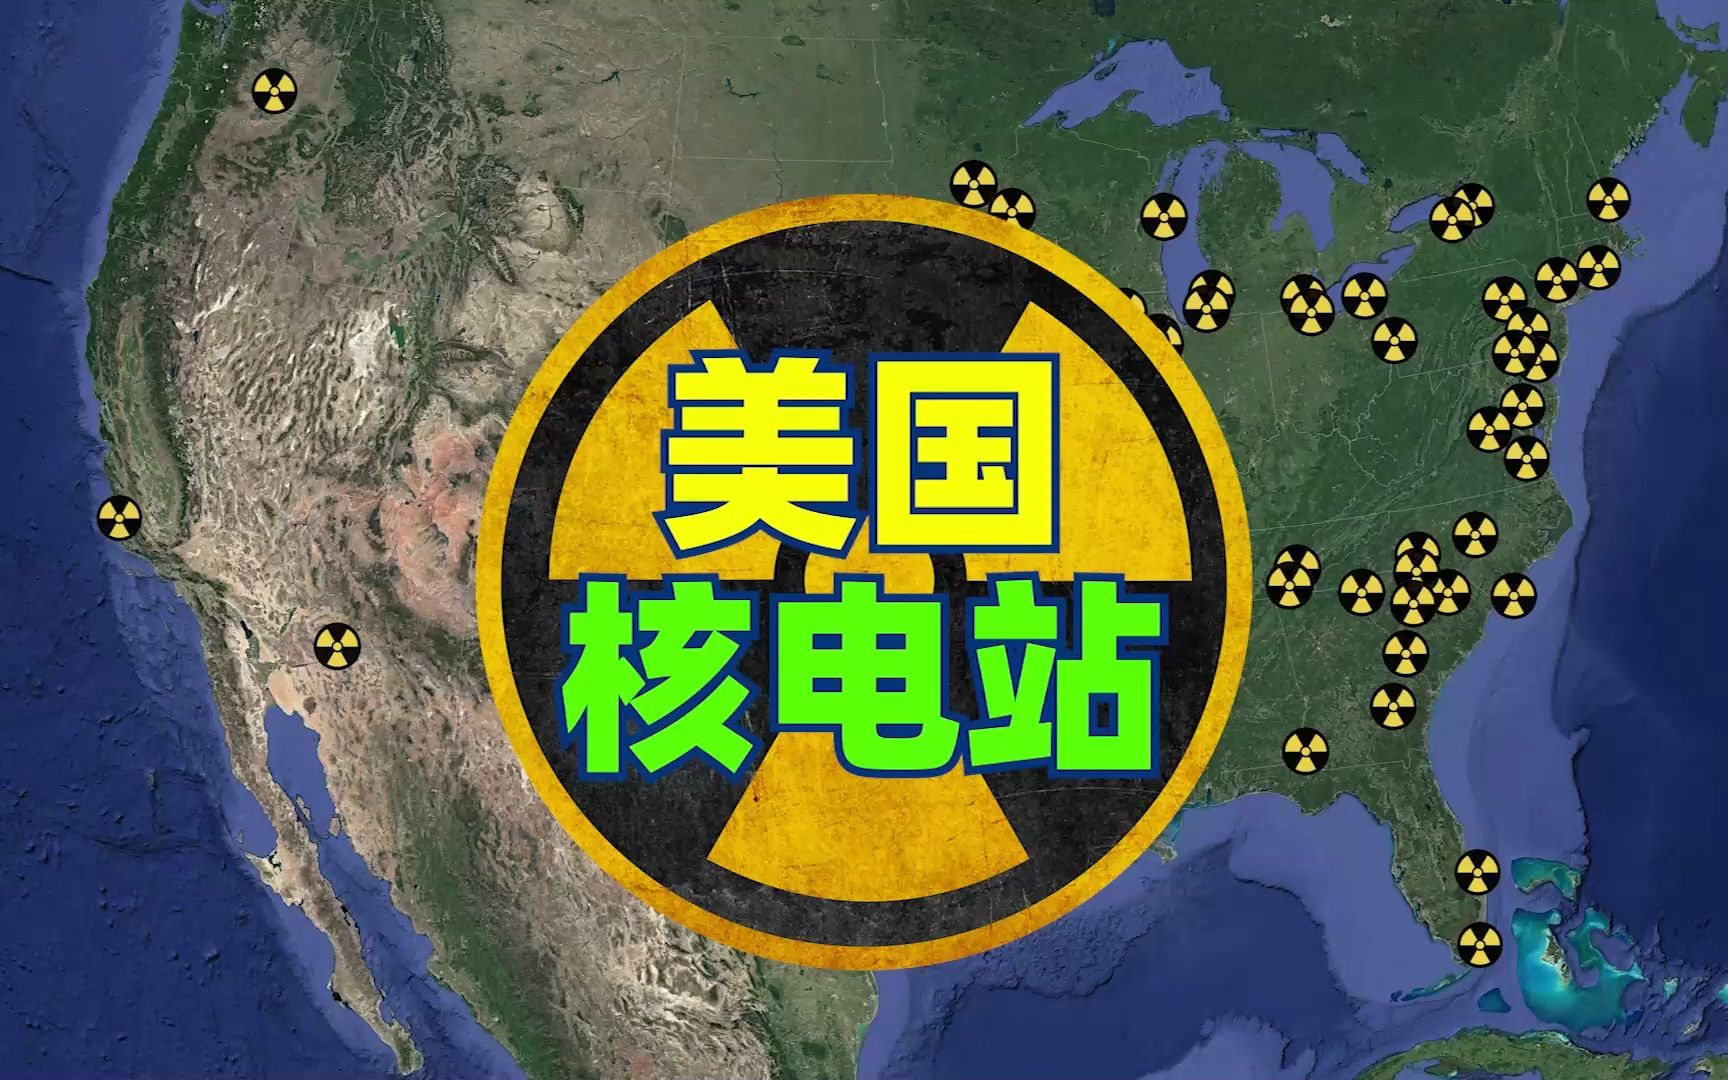 美国有多少座核电站？哪些核电站发生过核事故？